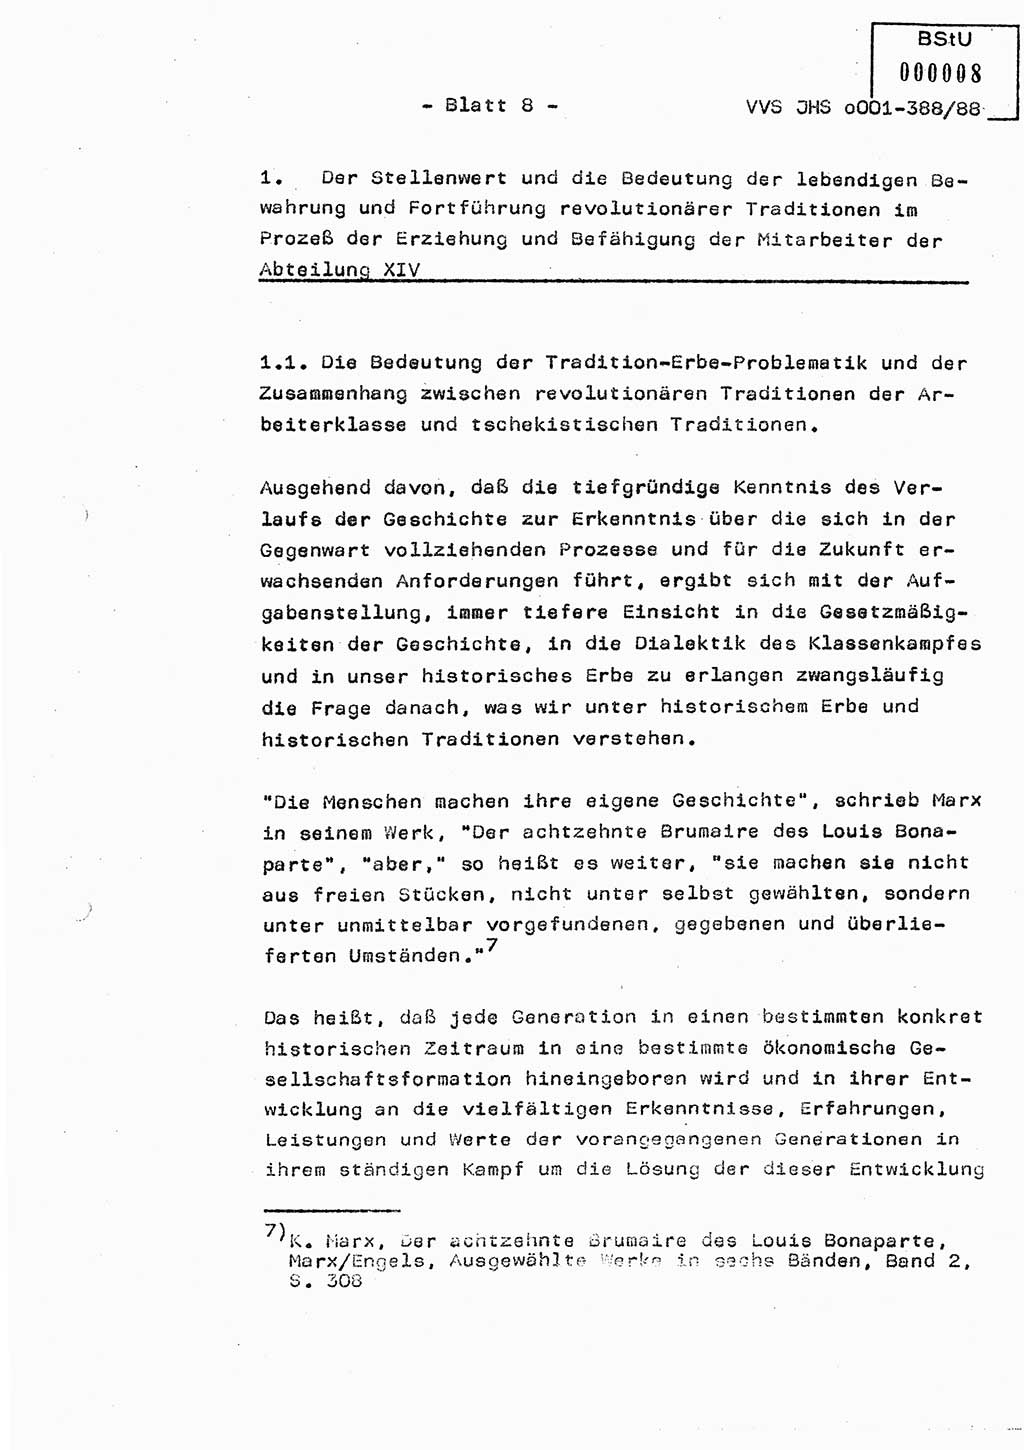 Diplomarbeit Hauptmann Heinz Brixel (Abt. ⅩⅣ), Ministerium für Staatssicherheit (MfS) [Deutsche Demokratische Republik (DDR)], Juristische Hochschule (JHS), Vertrauliche Verschlußsache (VVS) o001-388/88, Potsdam 1988, Blatt 8 (Dipl.-Arb. MfS DDR JHS VVS o001-388/88 1988, Bl. 8)